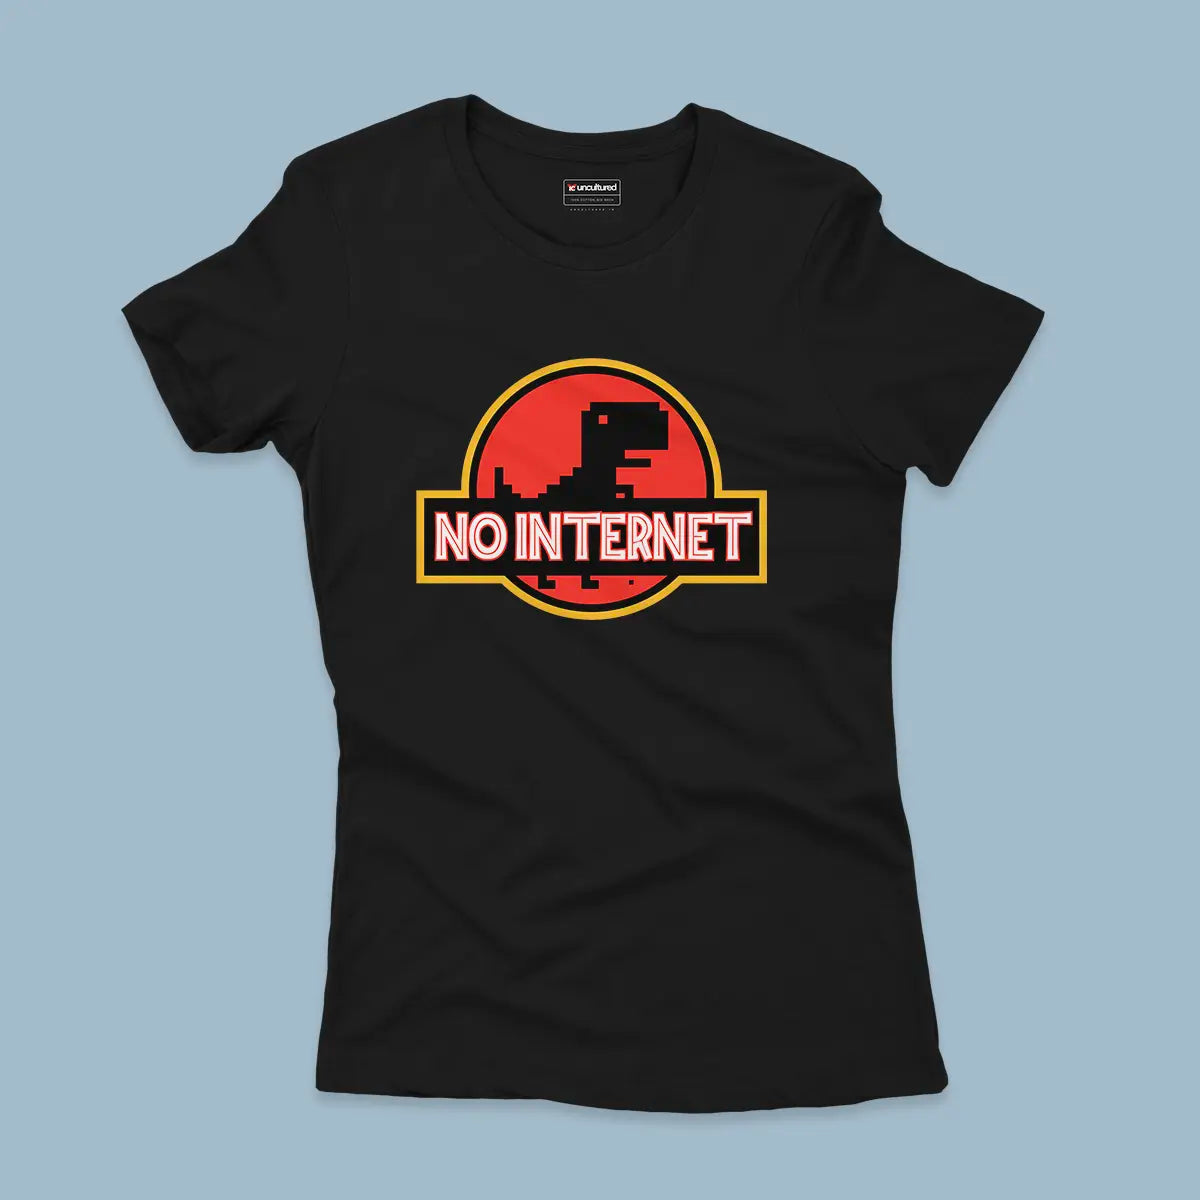 No internet - Regular - Women